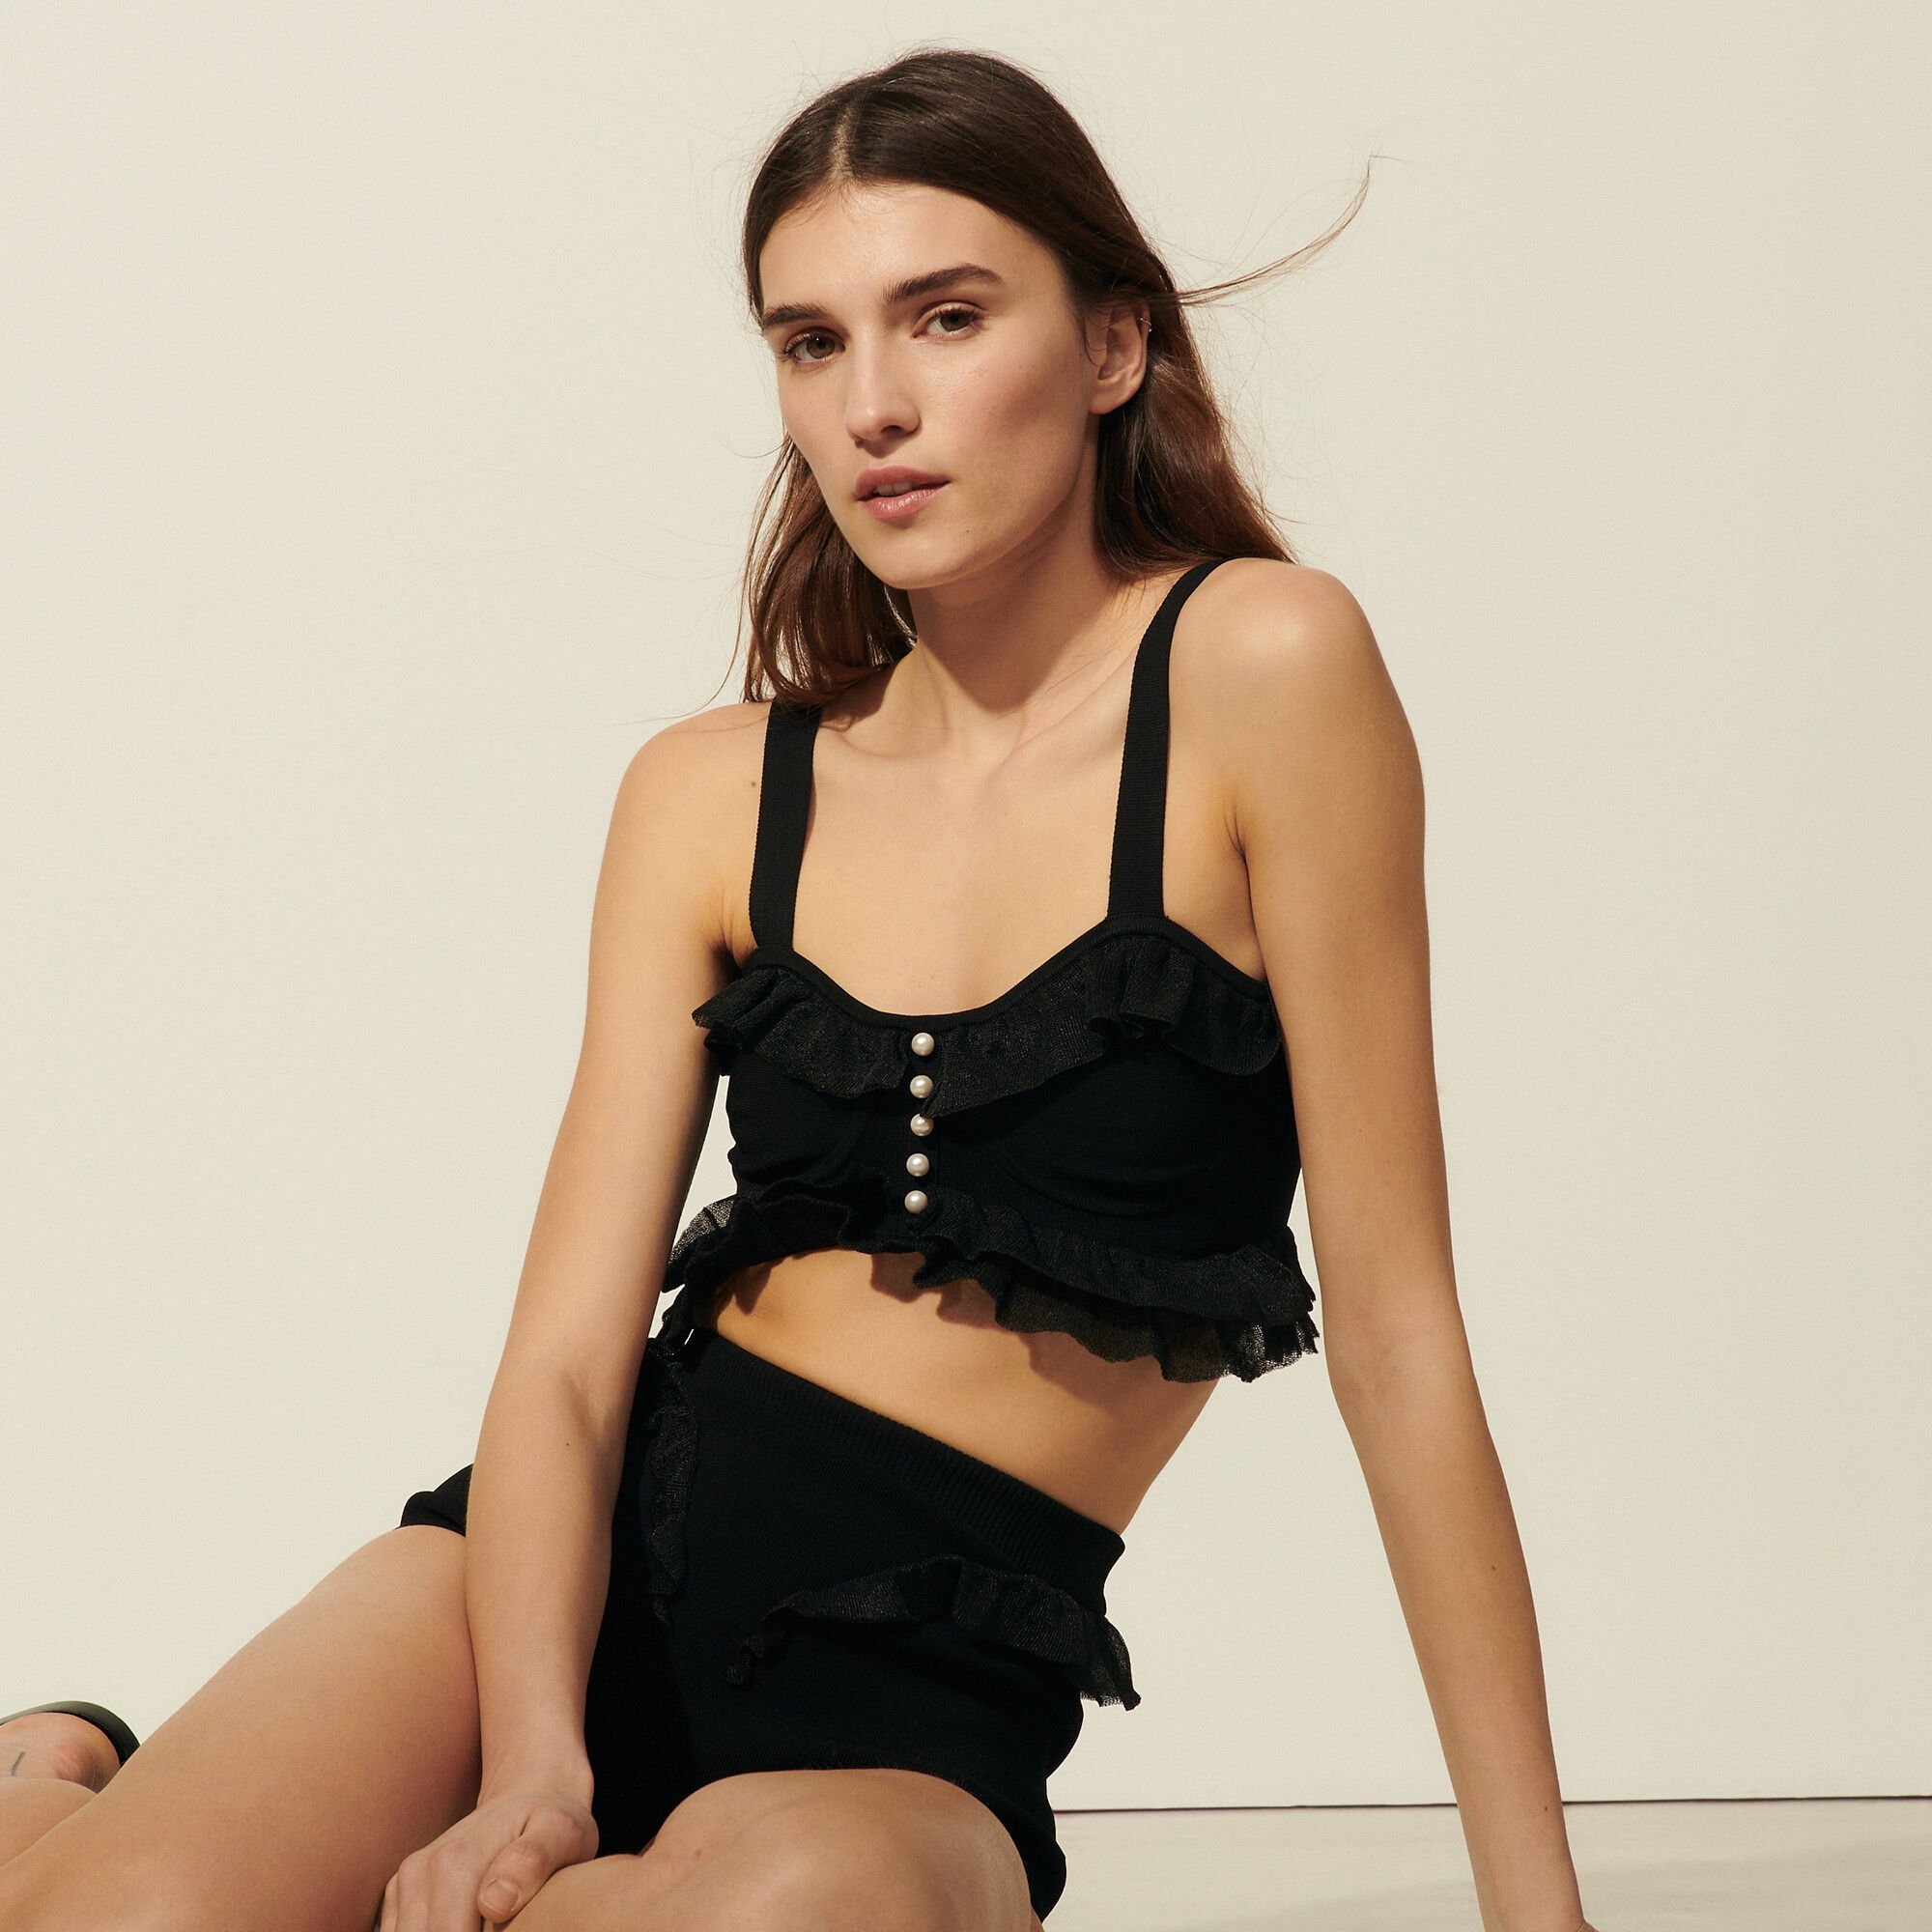 Sandro Lingerie-inspired Knitted Bra Top In Black